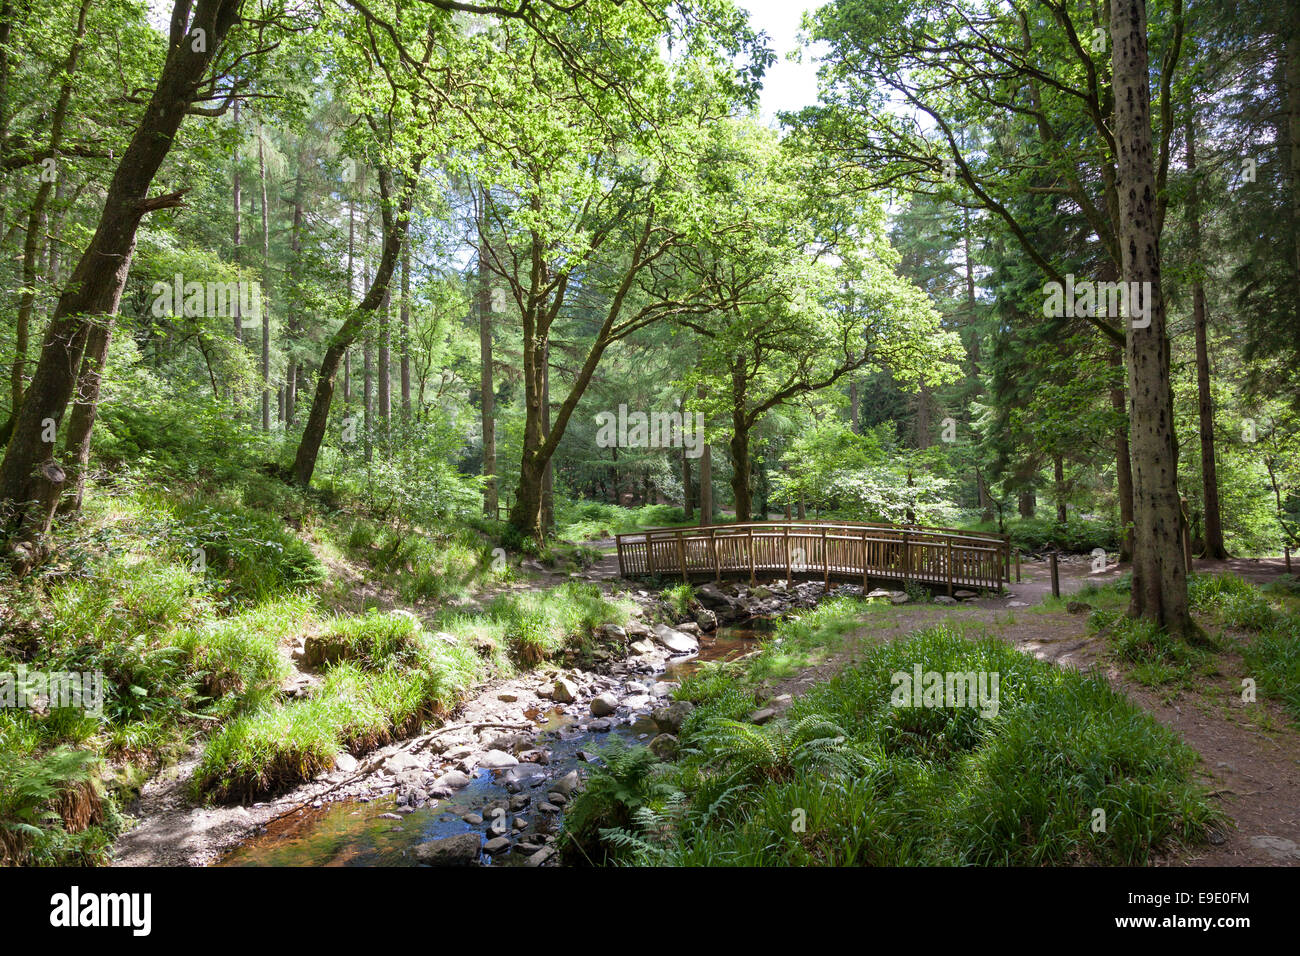 Queen Elizabeth Forest Park, parc national des Trossachs, Ecosse Banque D'Images